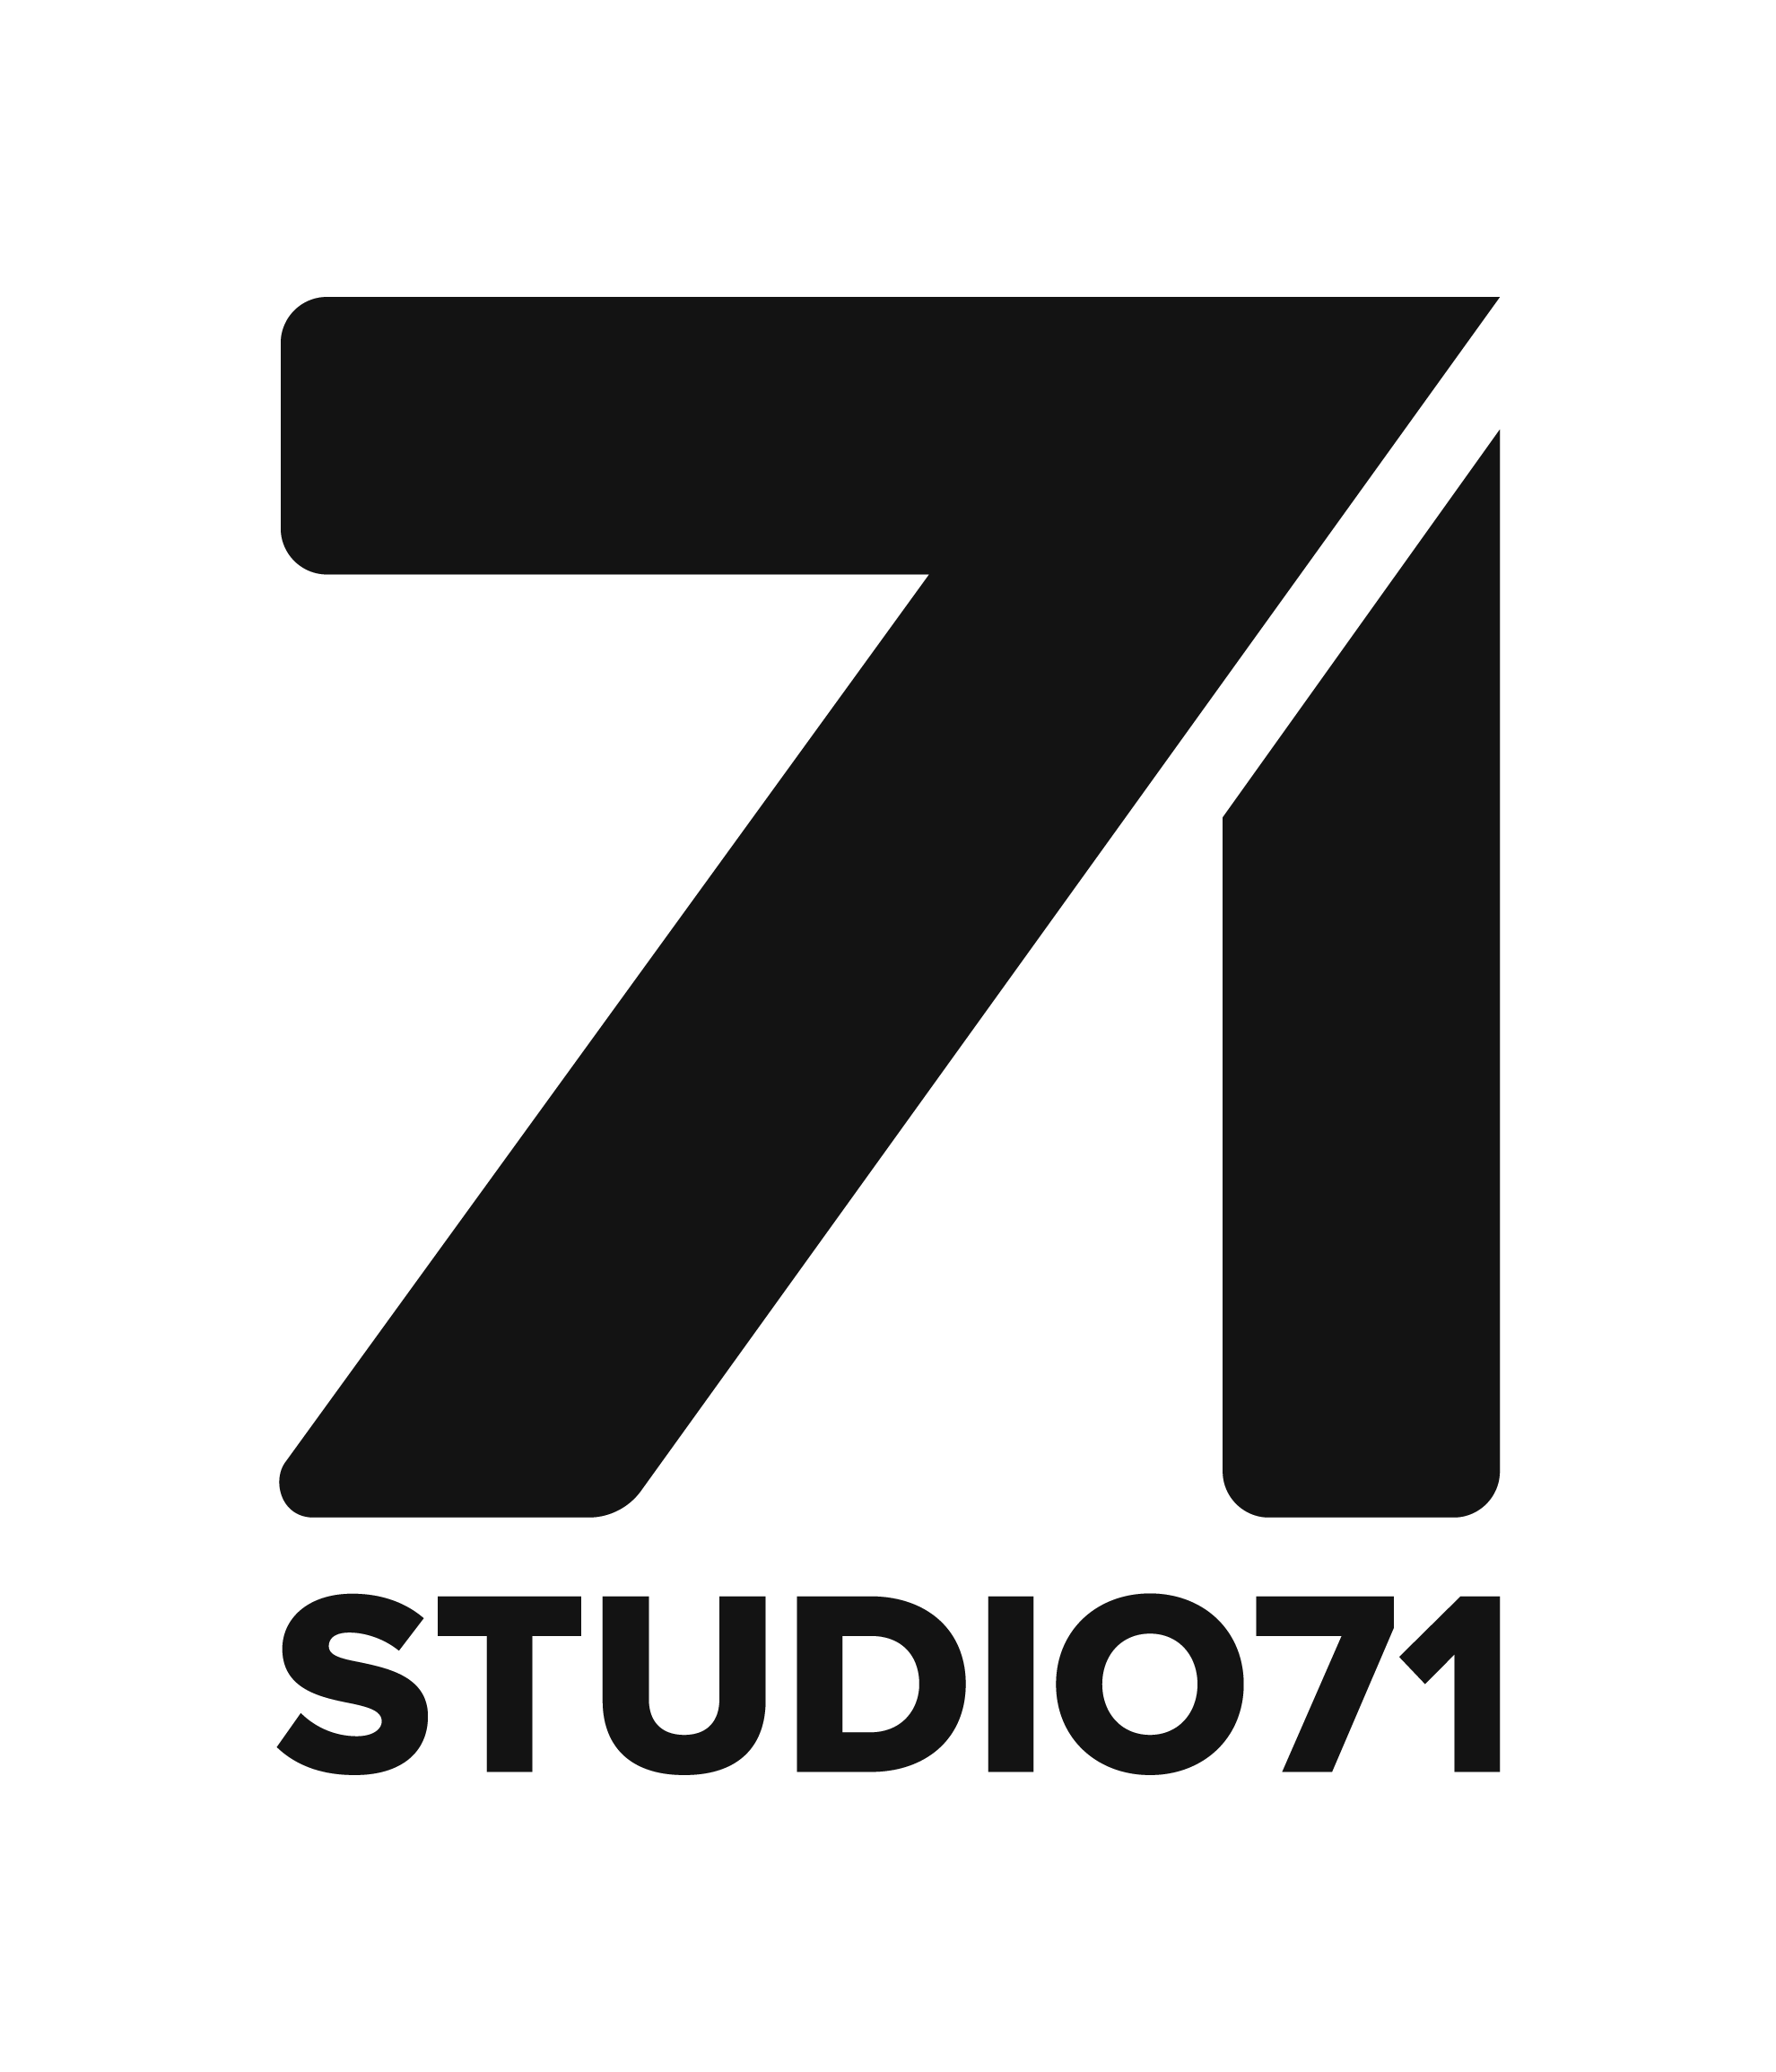 Studio71 Founders Launch Underscore Talent Management Firm: Details